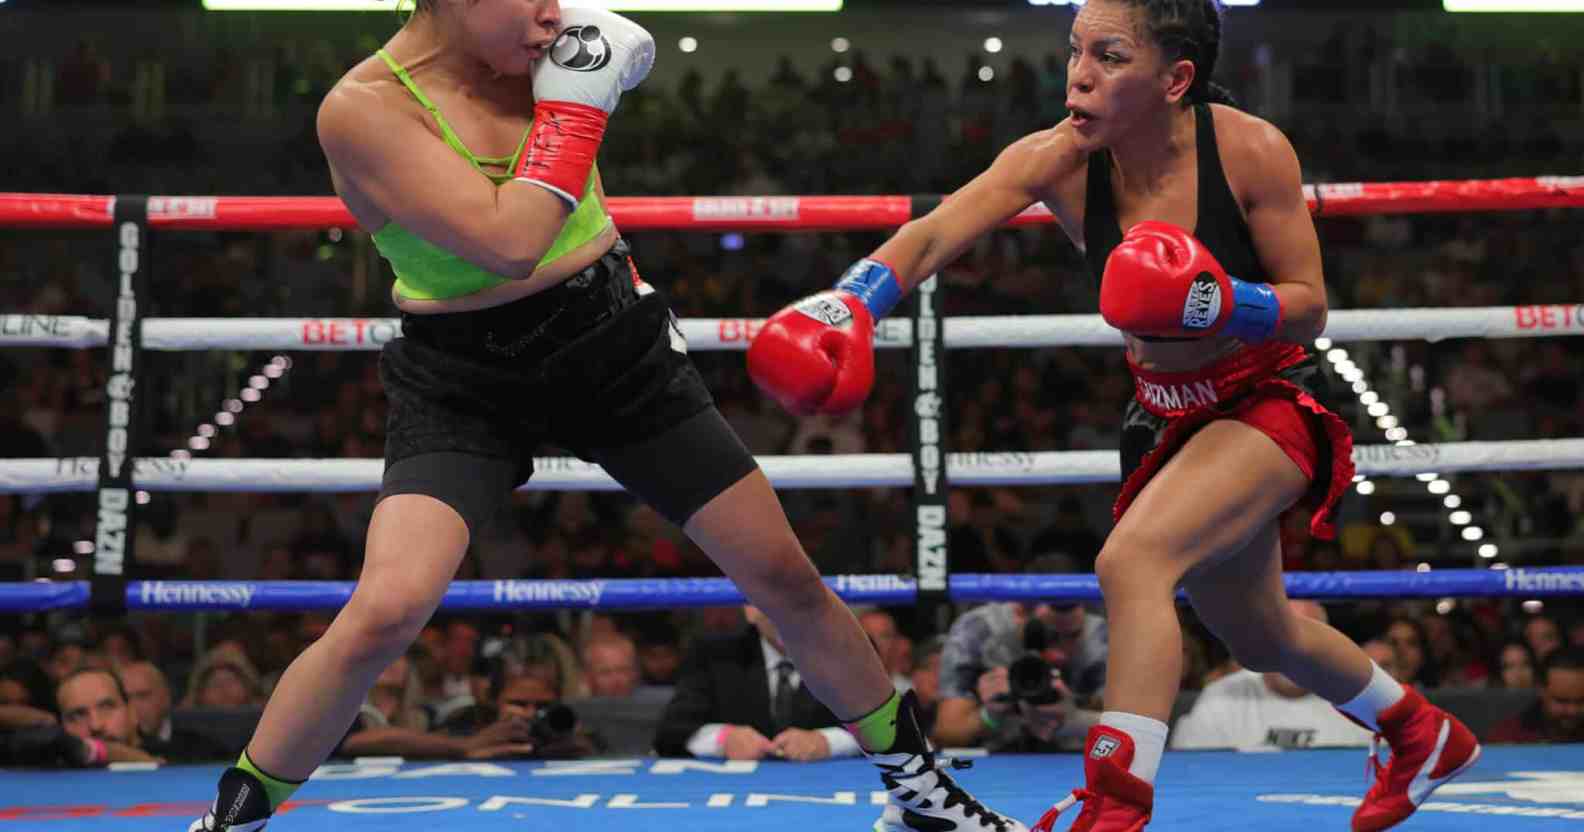 Eva Guzman (R) and Marlen Esparza (L) exchange punches